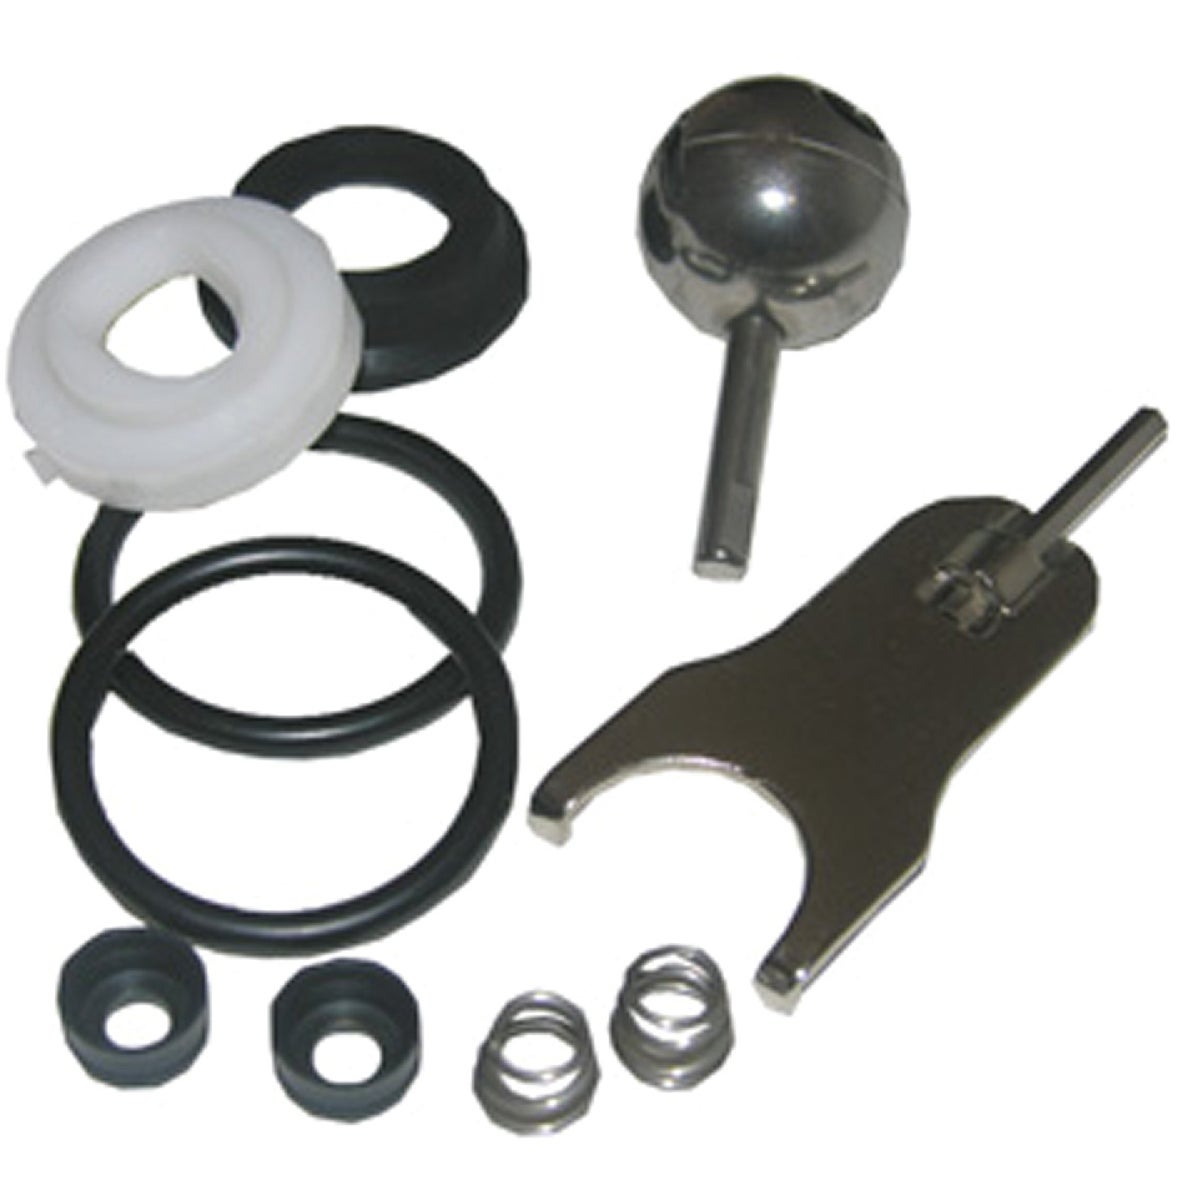 Lasco Kitchen & Bath Metal Lever Handle Various Parts Faucet Repair Kit